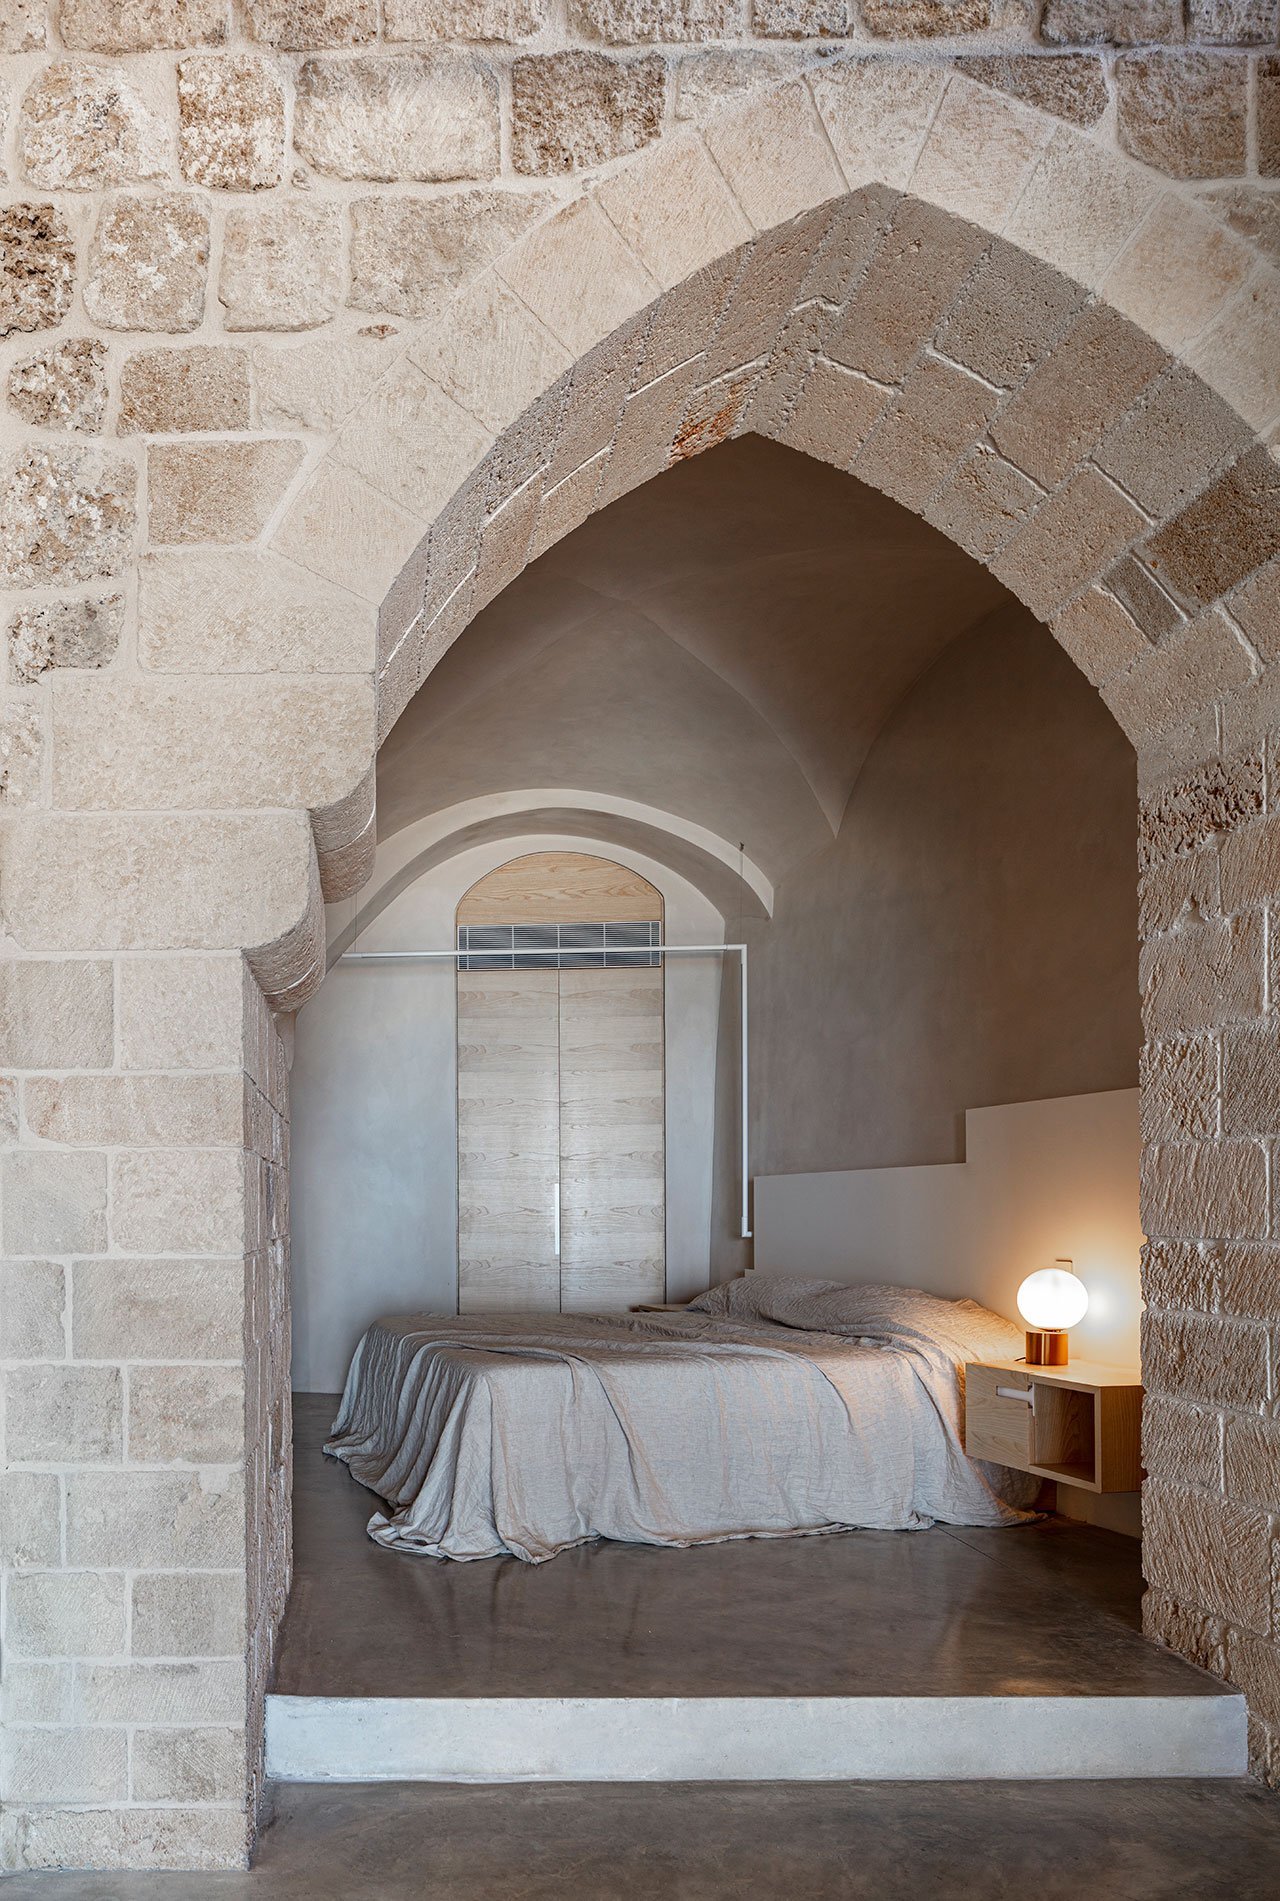 Casa moderna de piedra y ladrillo reformada en Tel Aviv por el arquitecto Pitsou Kedem dormitorio bajo un arco